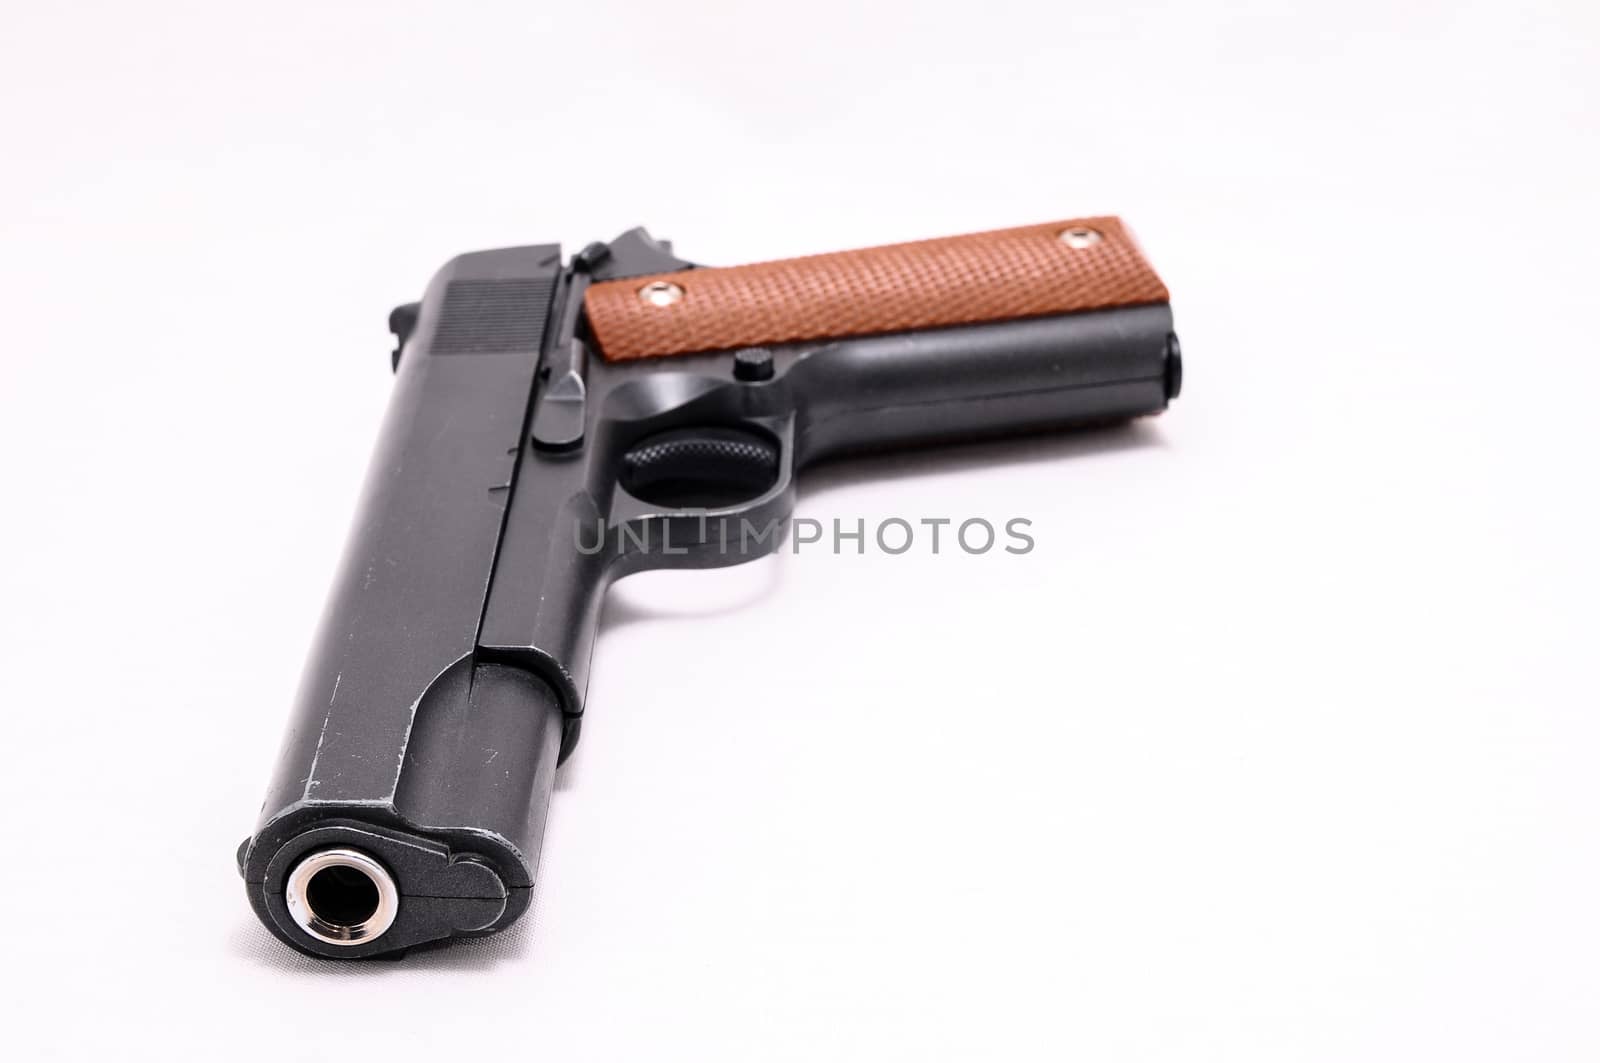 Pistol Handgun by underworld